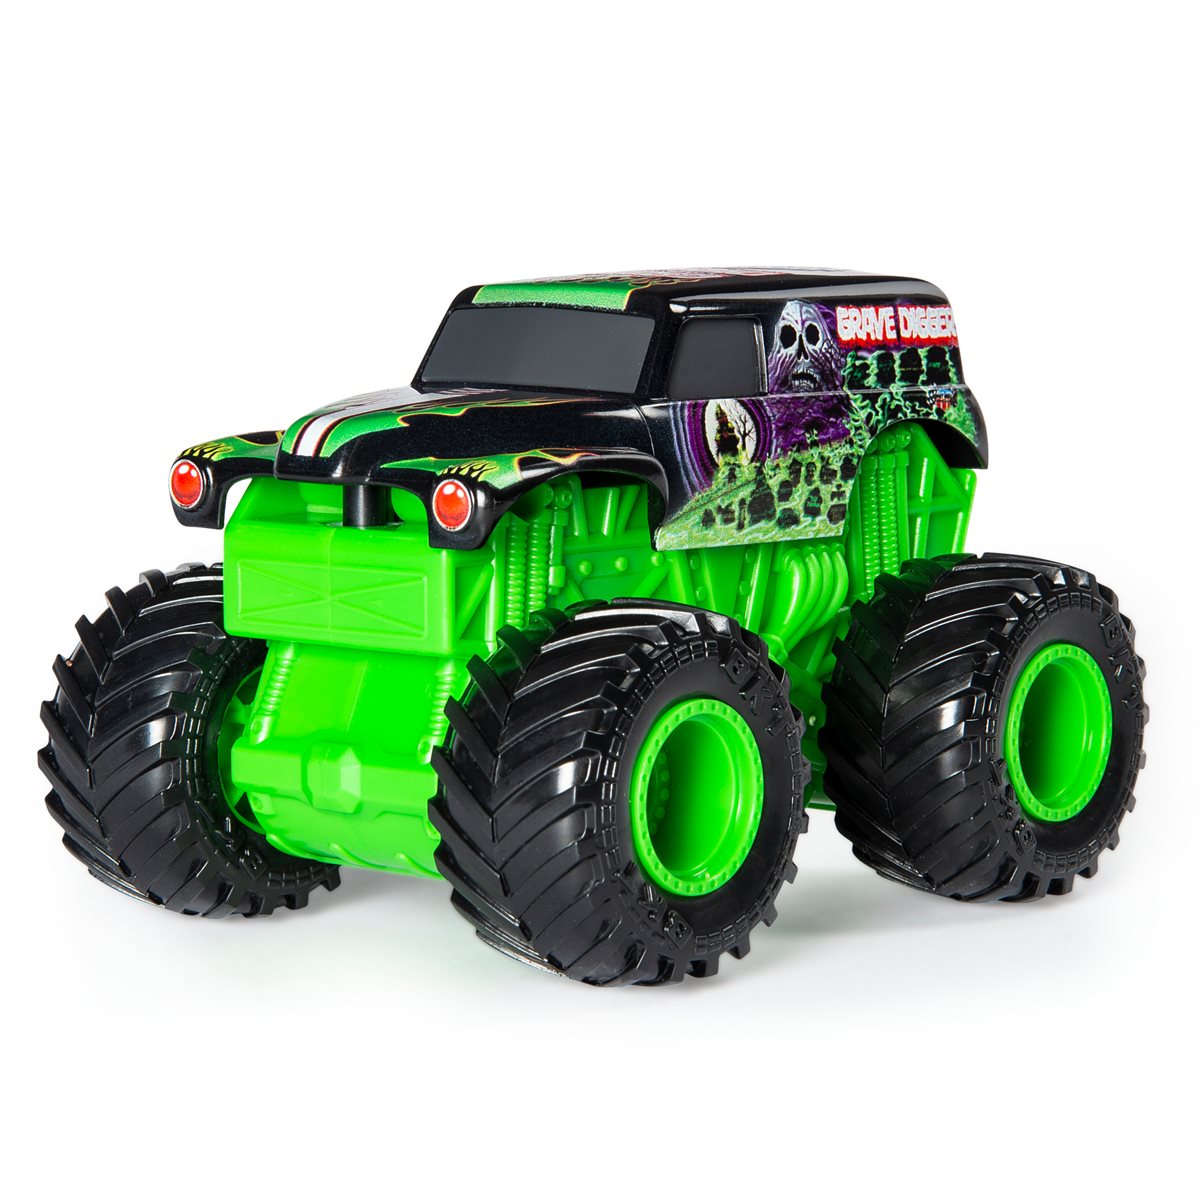 Monster Jam Grave Digger Rev 'N Roar 1:43 Scale Monster Truck Vehicle